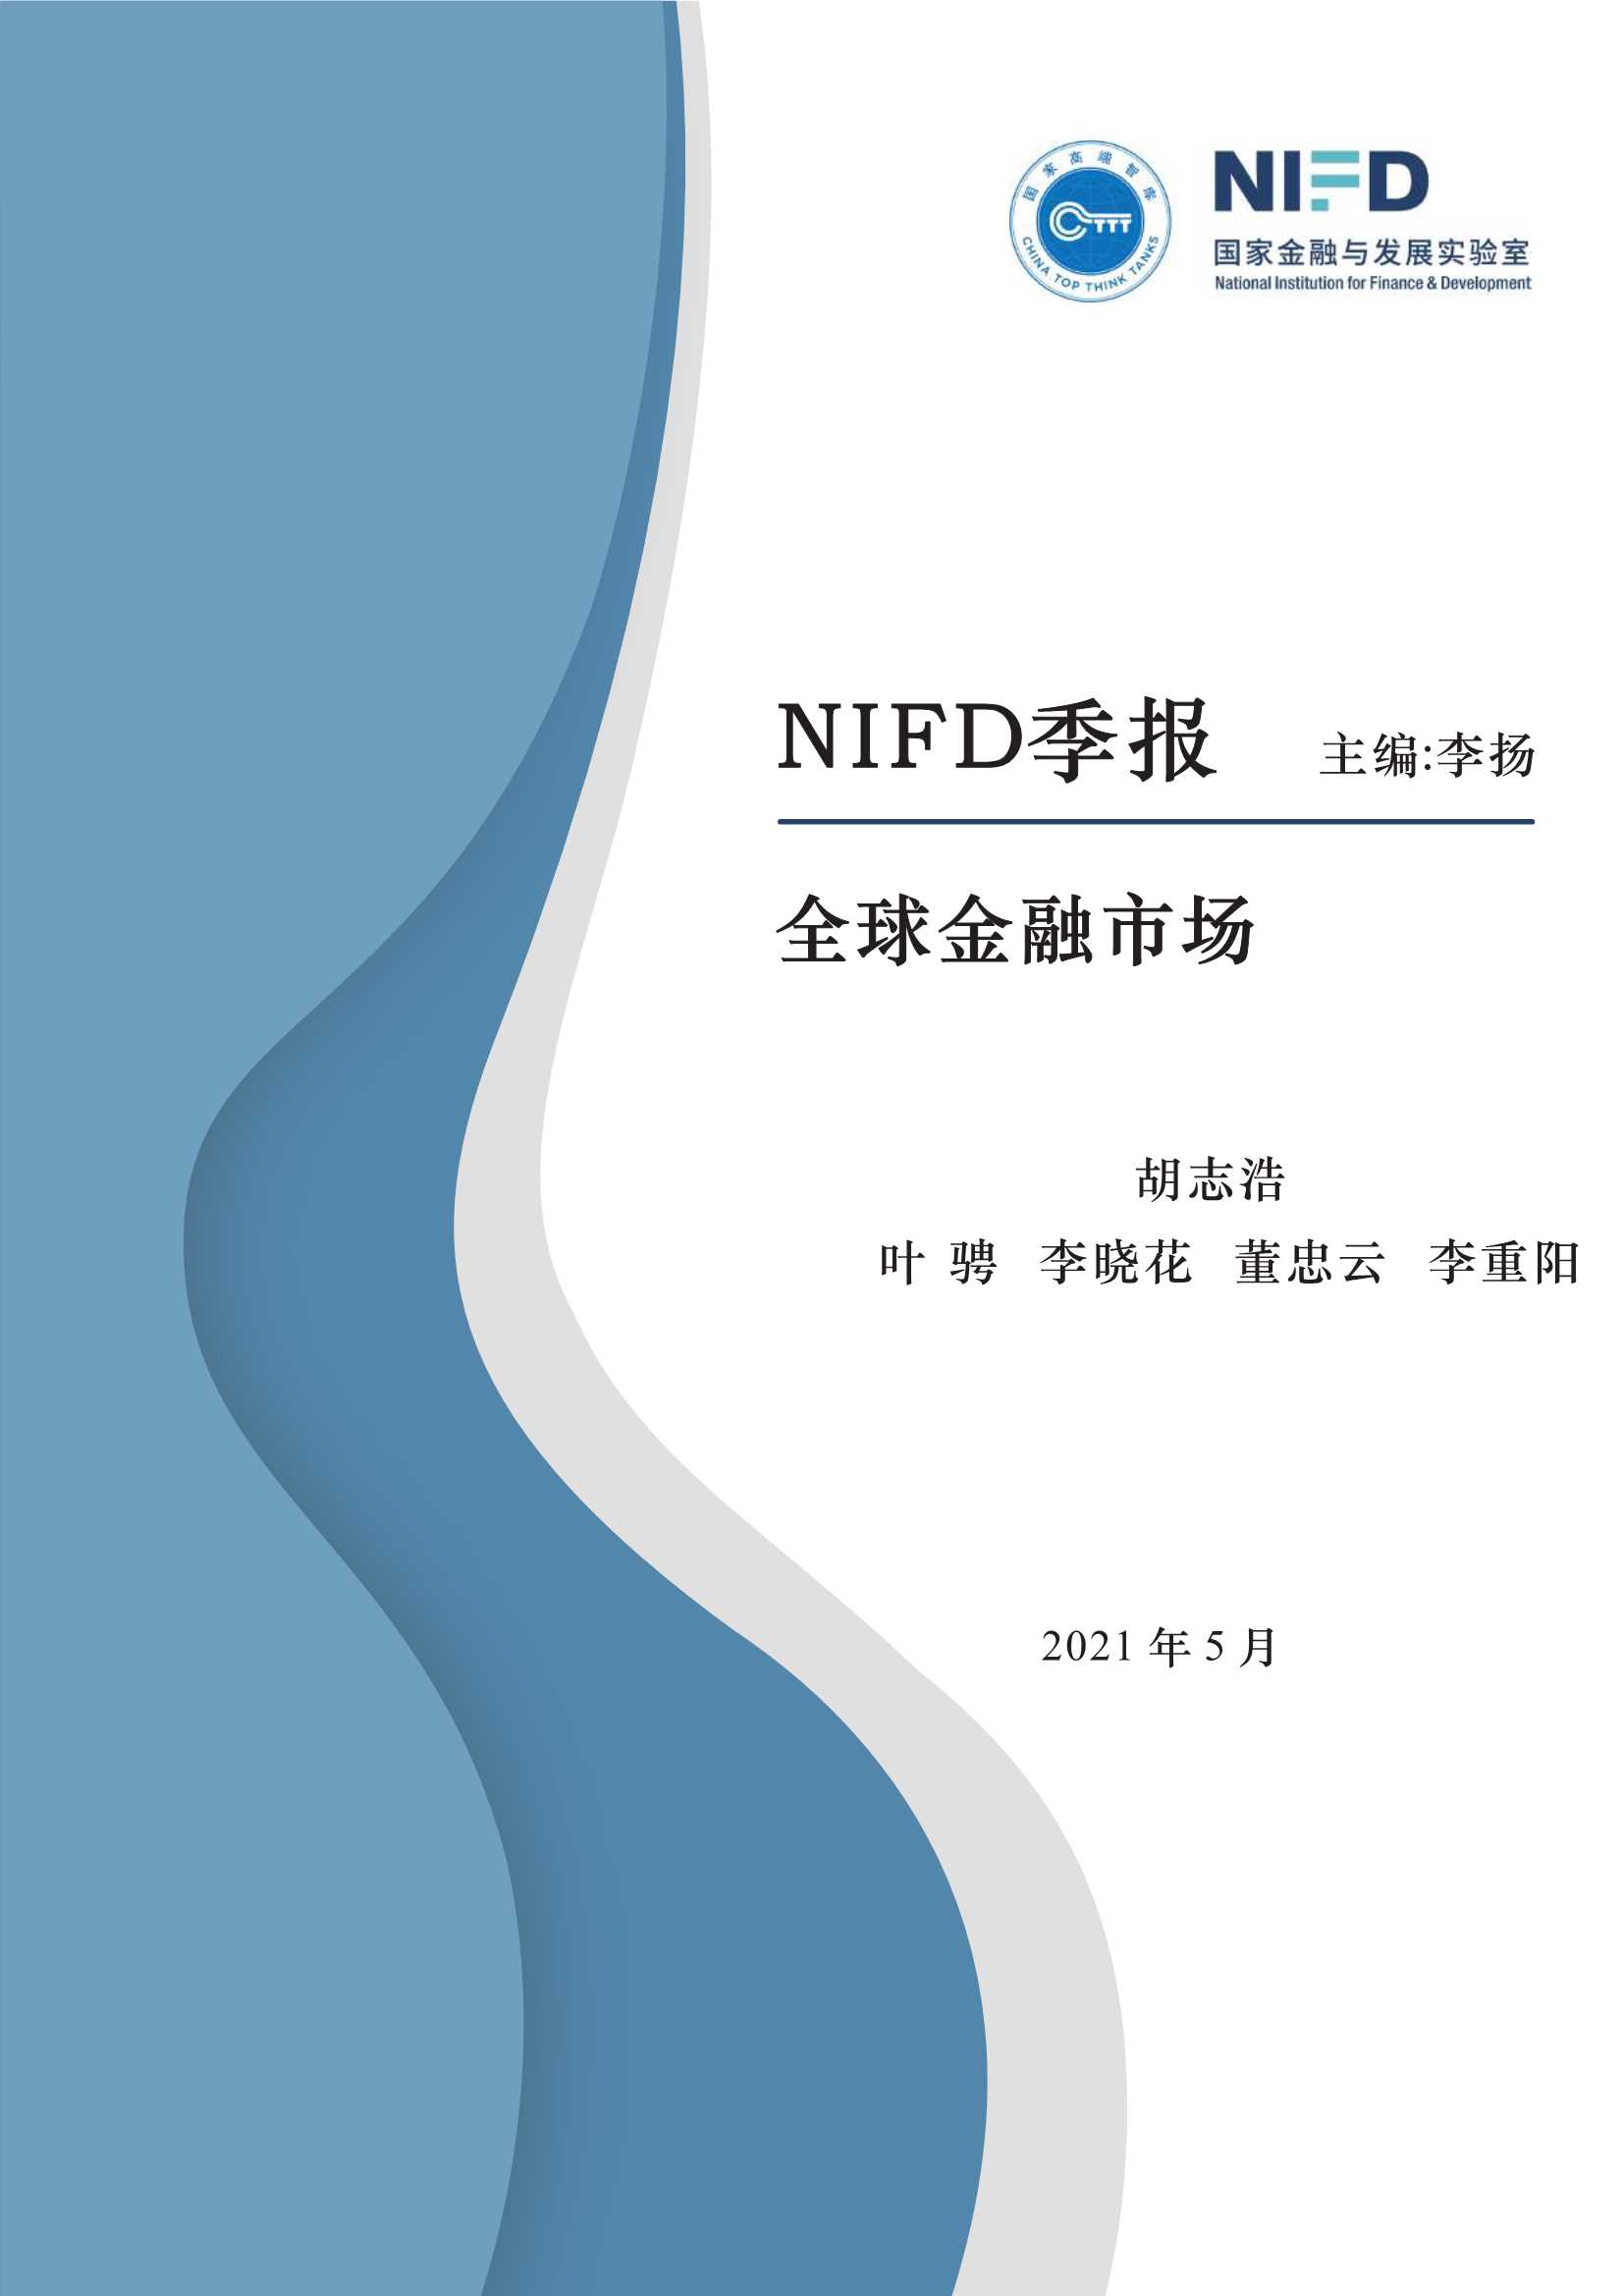 NIFD-2021Q1全球金融市场-2021.05-54页